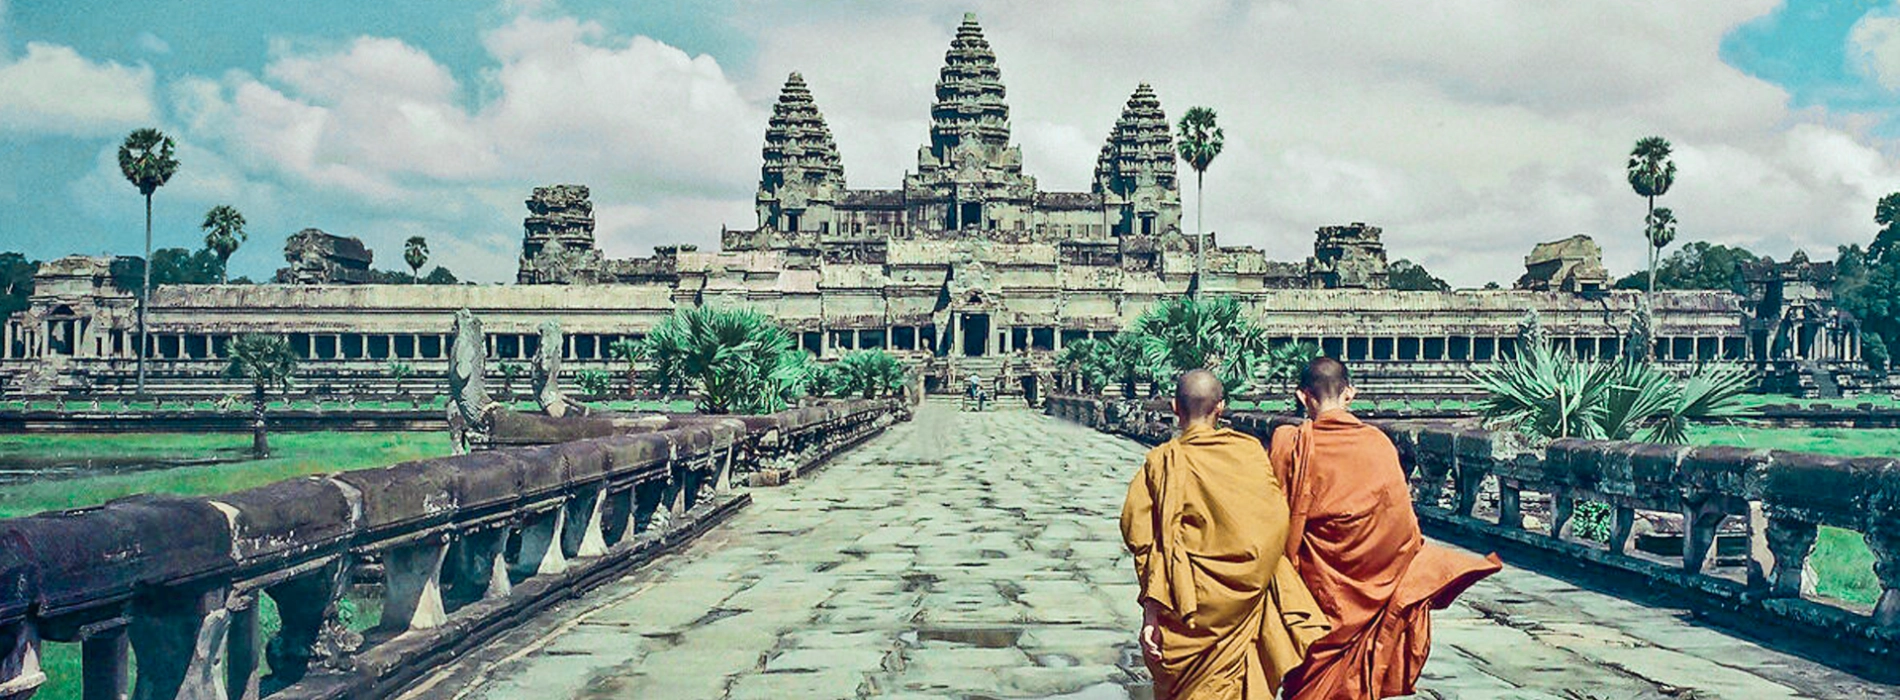 Top 7 Historic Sites in Cambodia